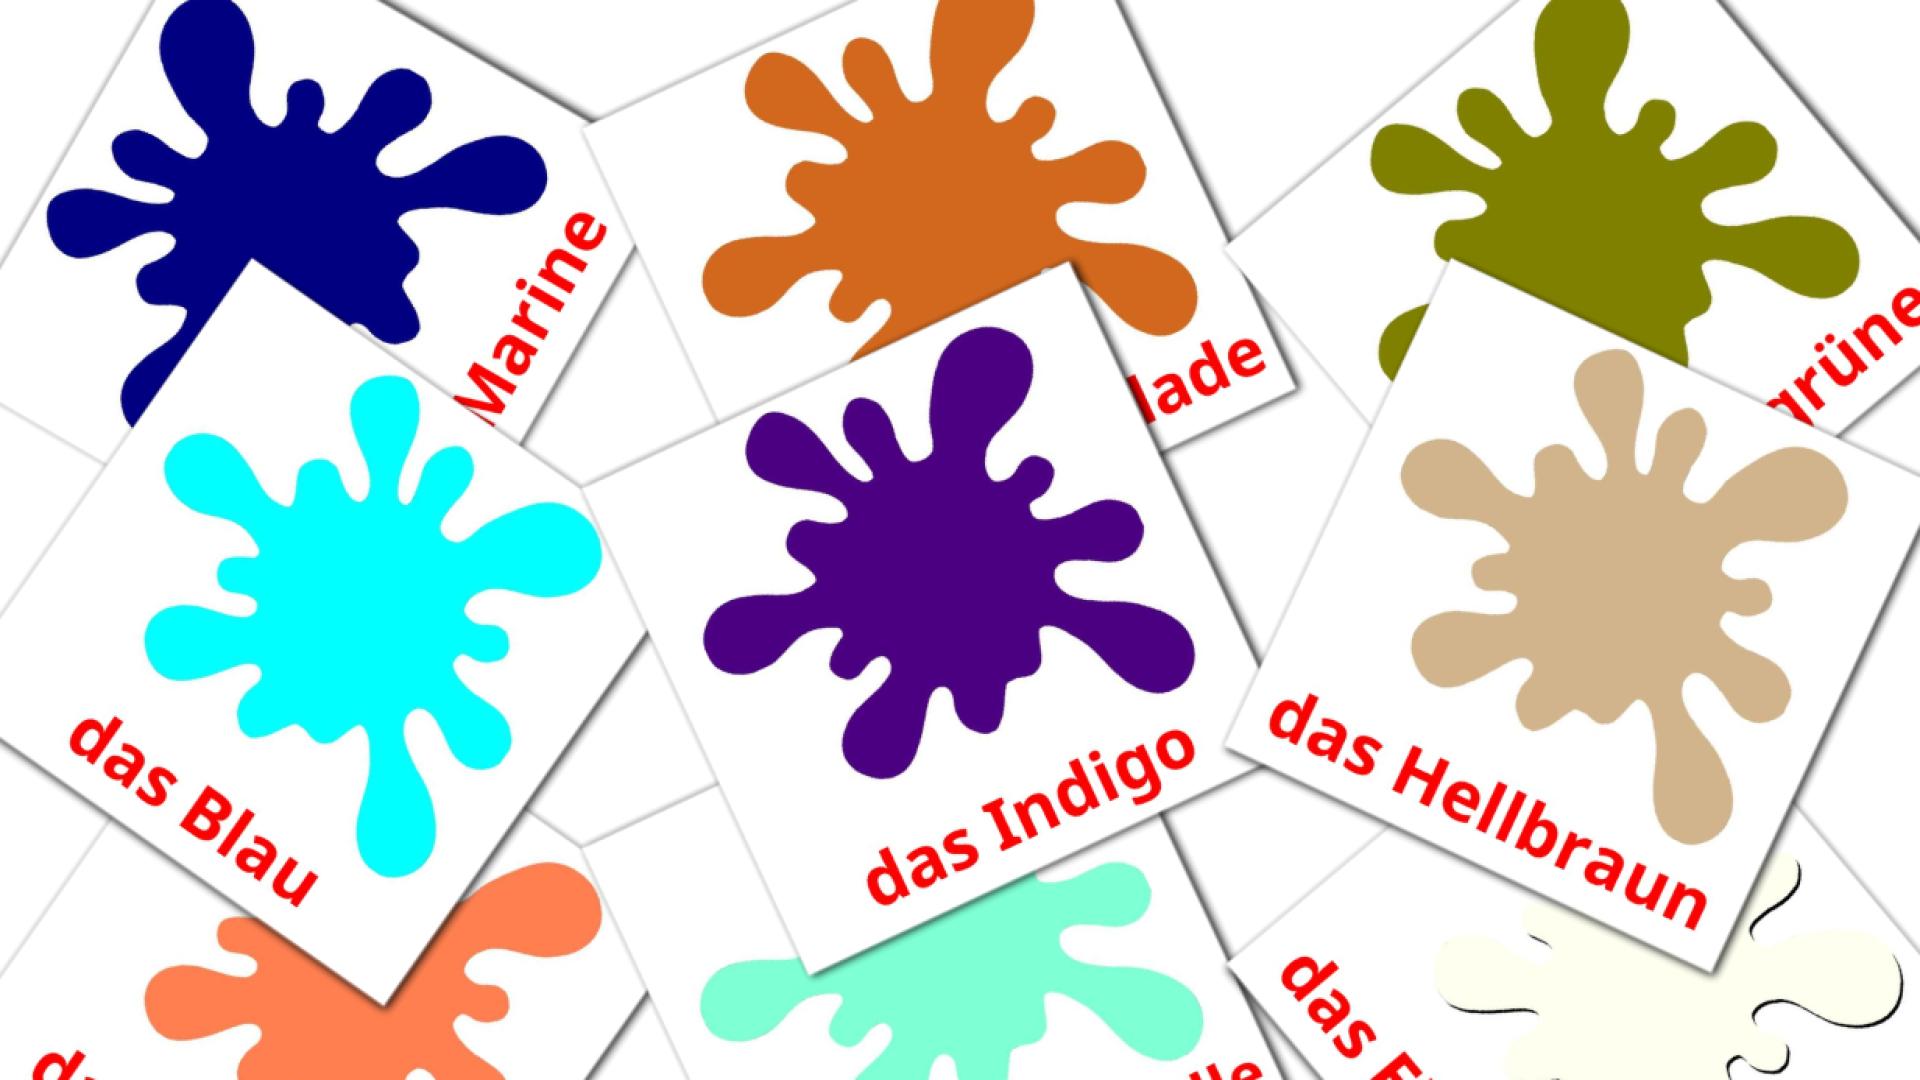 Colores secundarios - tarjetas de vocabulario en alemán